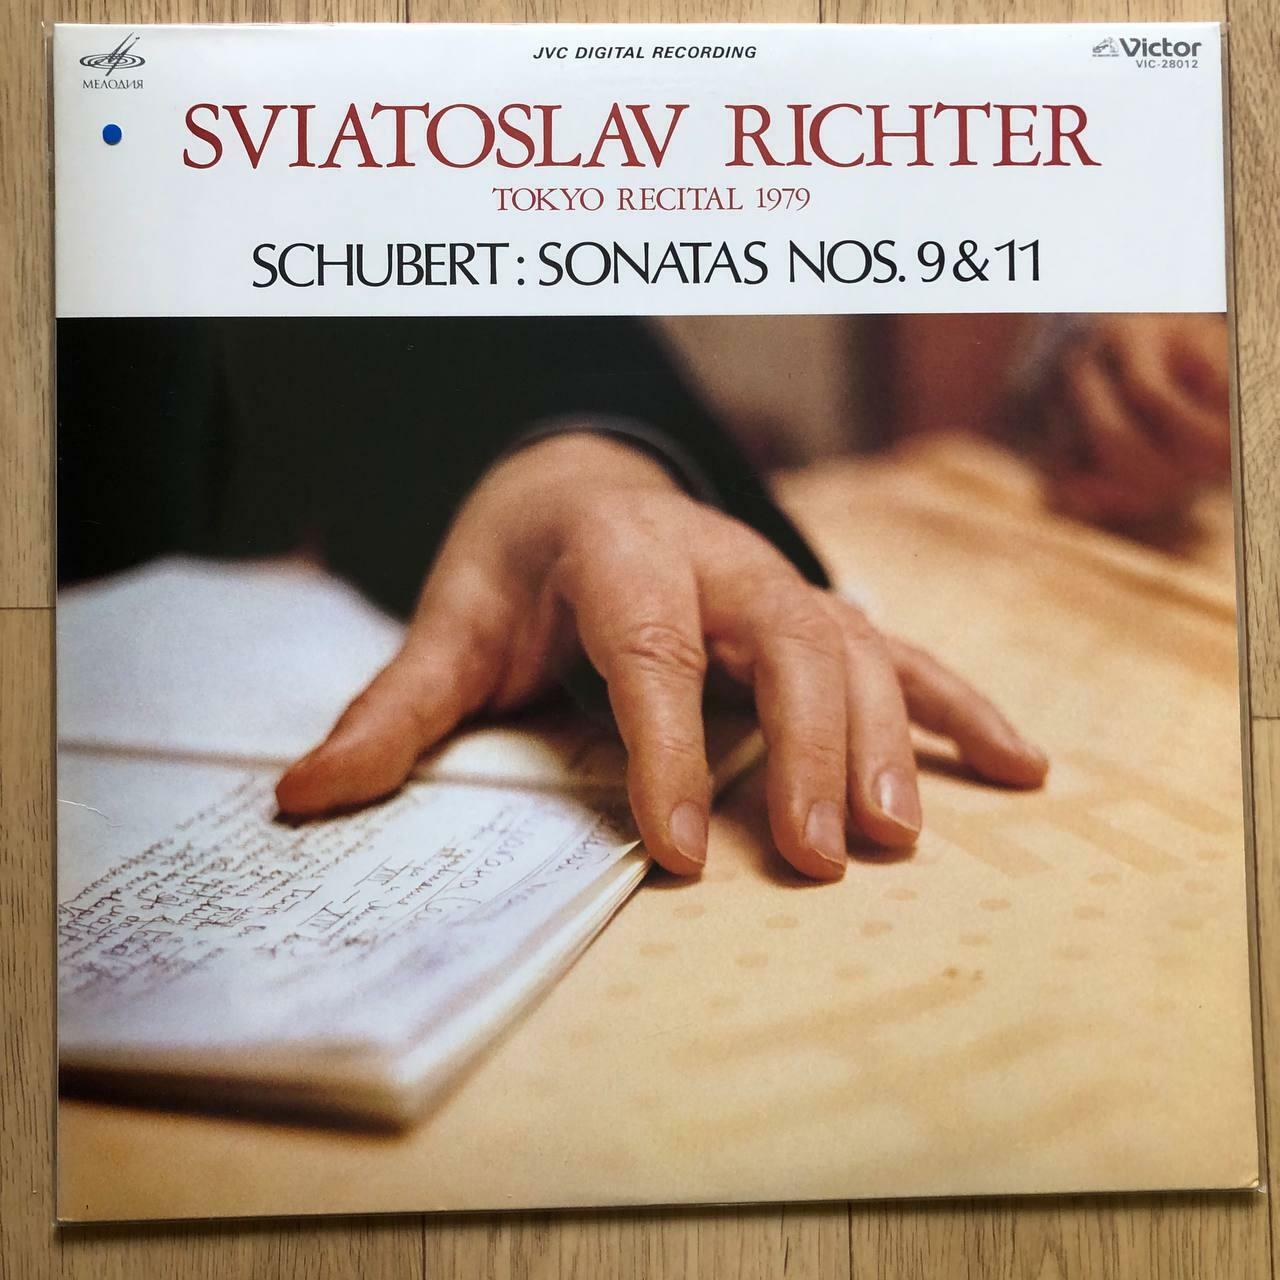 [중고]  [수입LP]리히터 - 1979년 일본 실황 연주 :슈베르트 피아노 소나타 9번 & 11번:   리히터 (Sviatoslav Richter) 